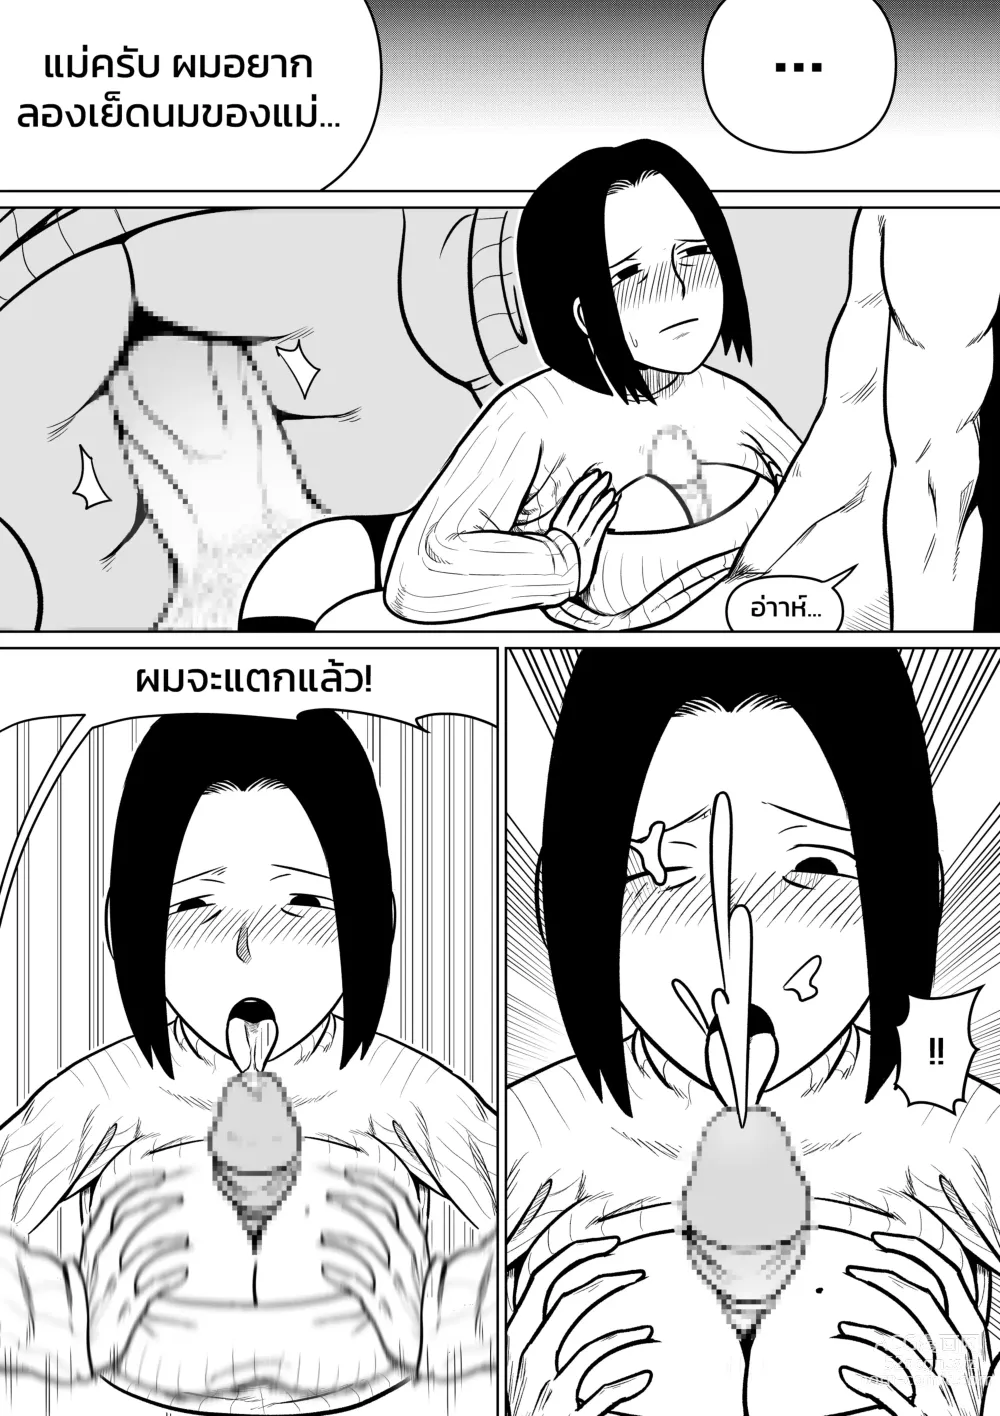 Page 13 of doujinshi ผมตกหลุมรักแม่ตัวเอง ตอนที่ 3